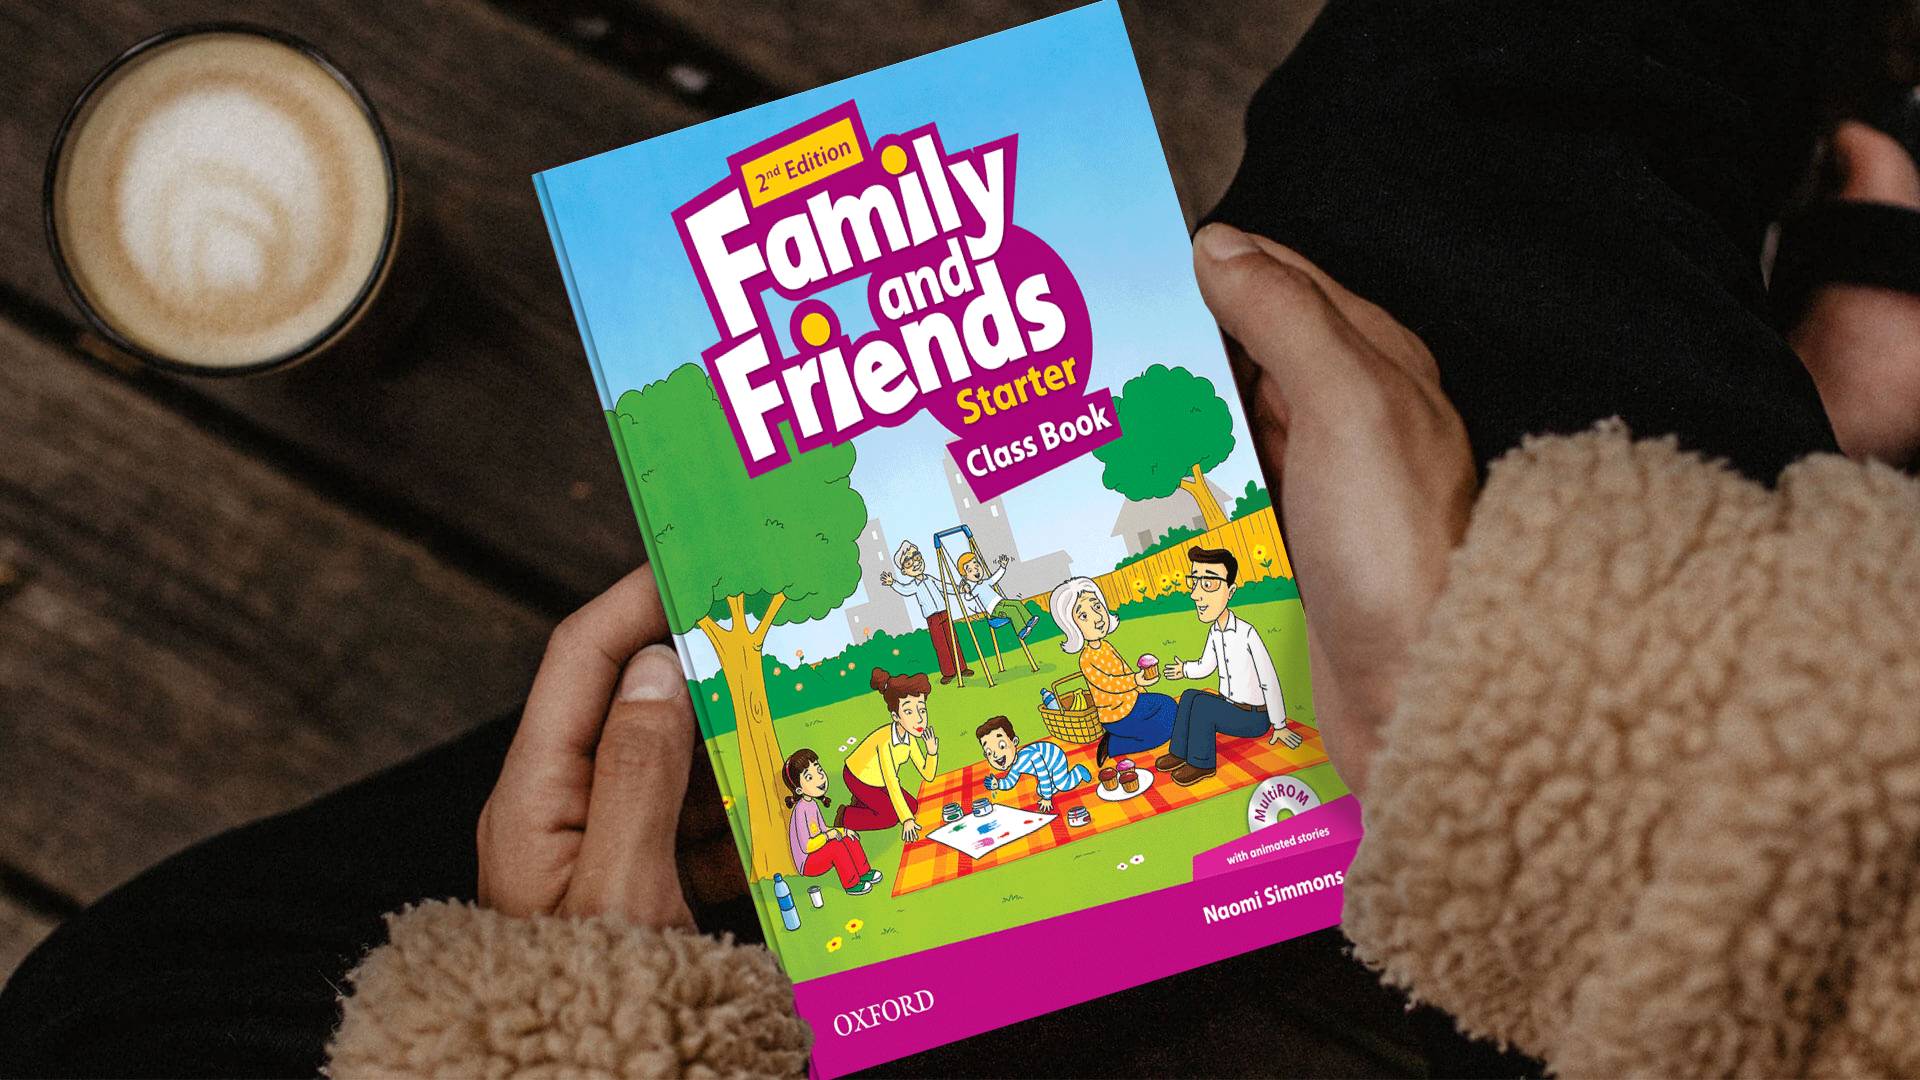 خرید کتاب زبان | کتاب زبان اصلی | Family and Friends starter 2nd Edition | فمیلی اند فرندز استارتر ویرایش دوم